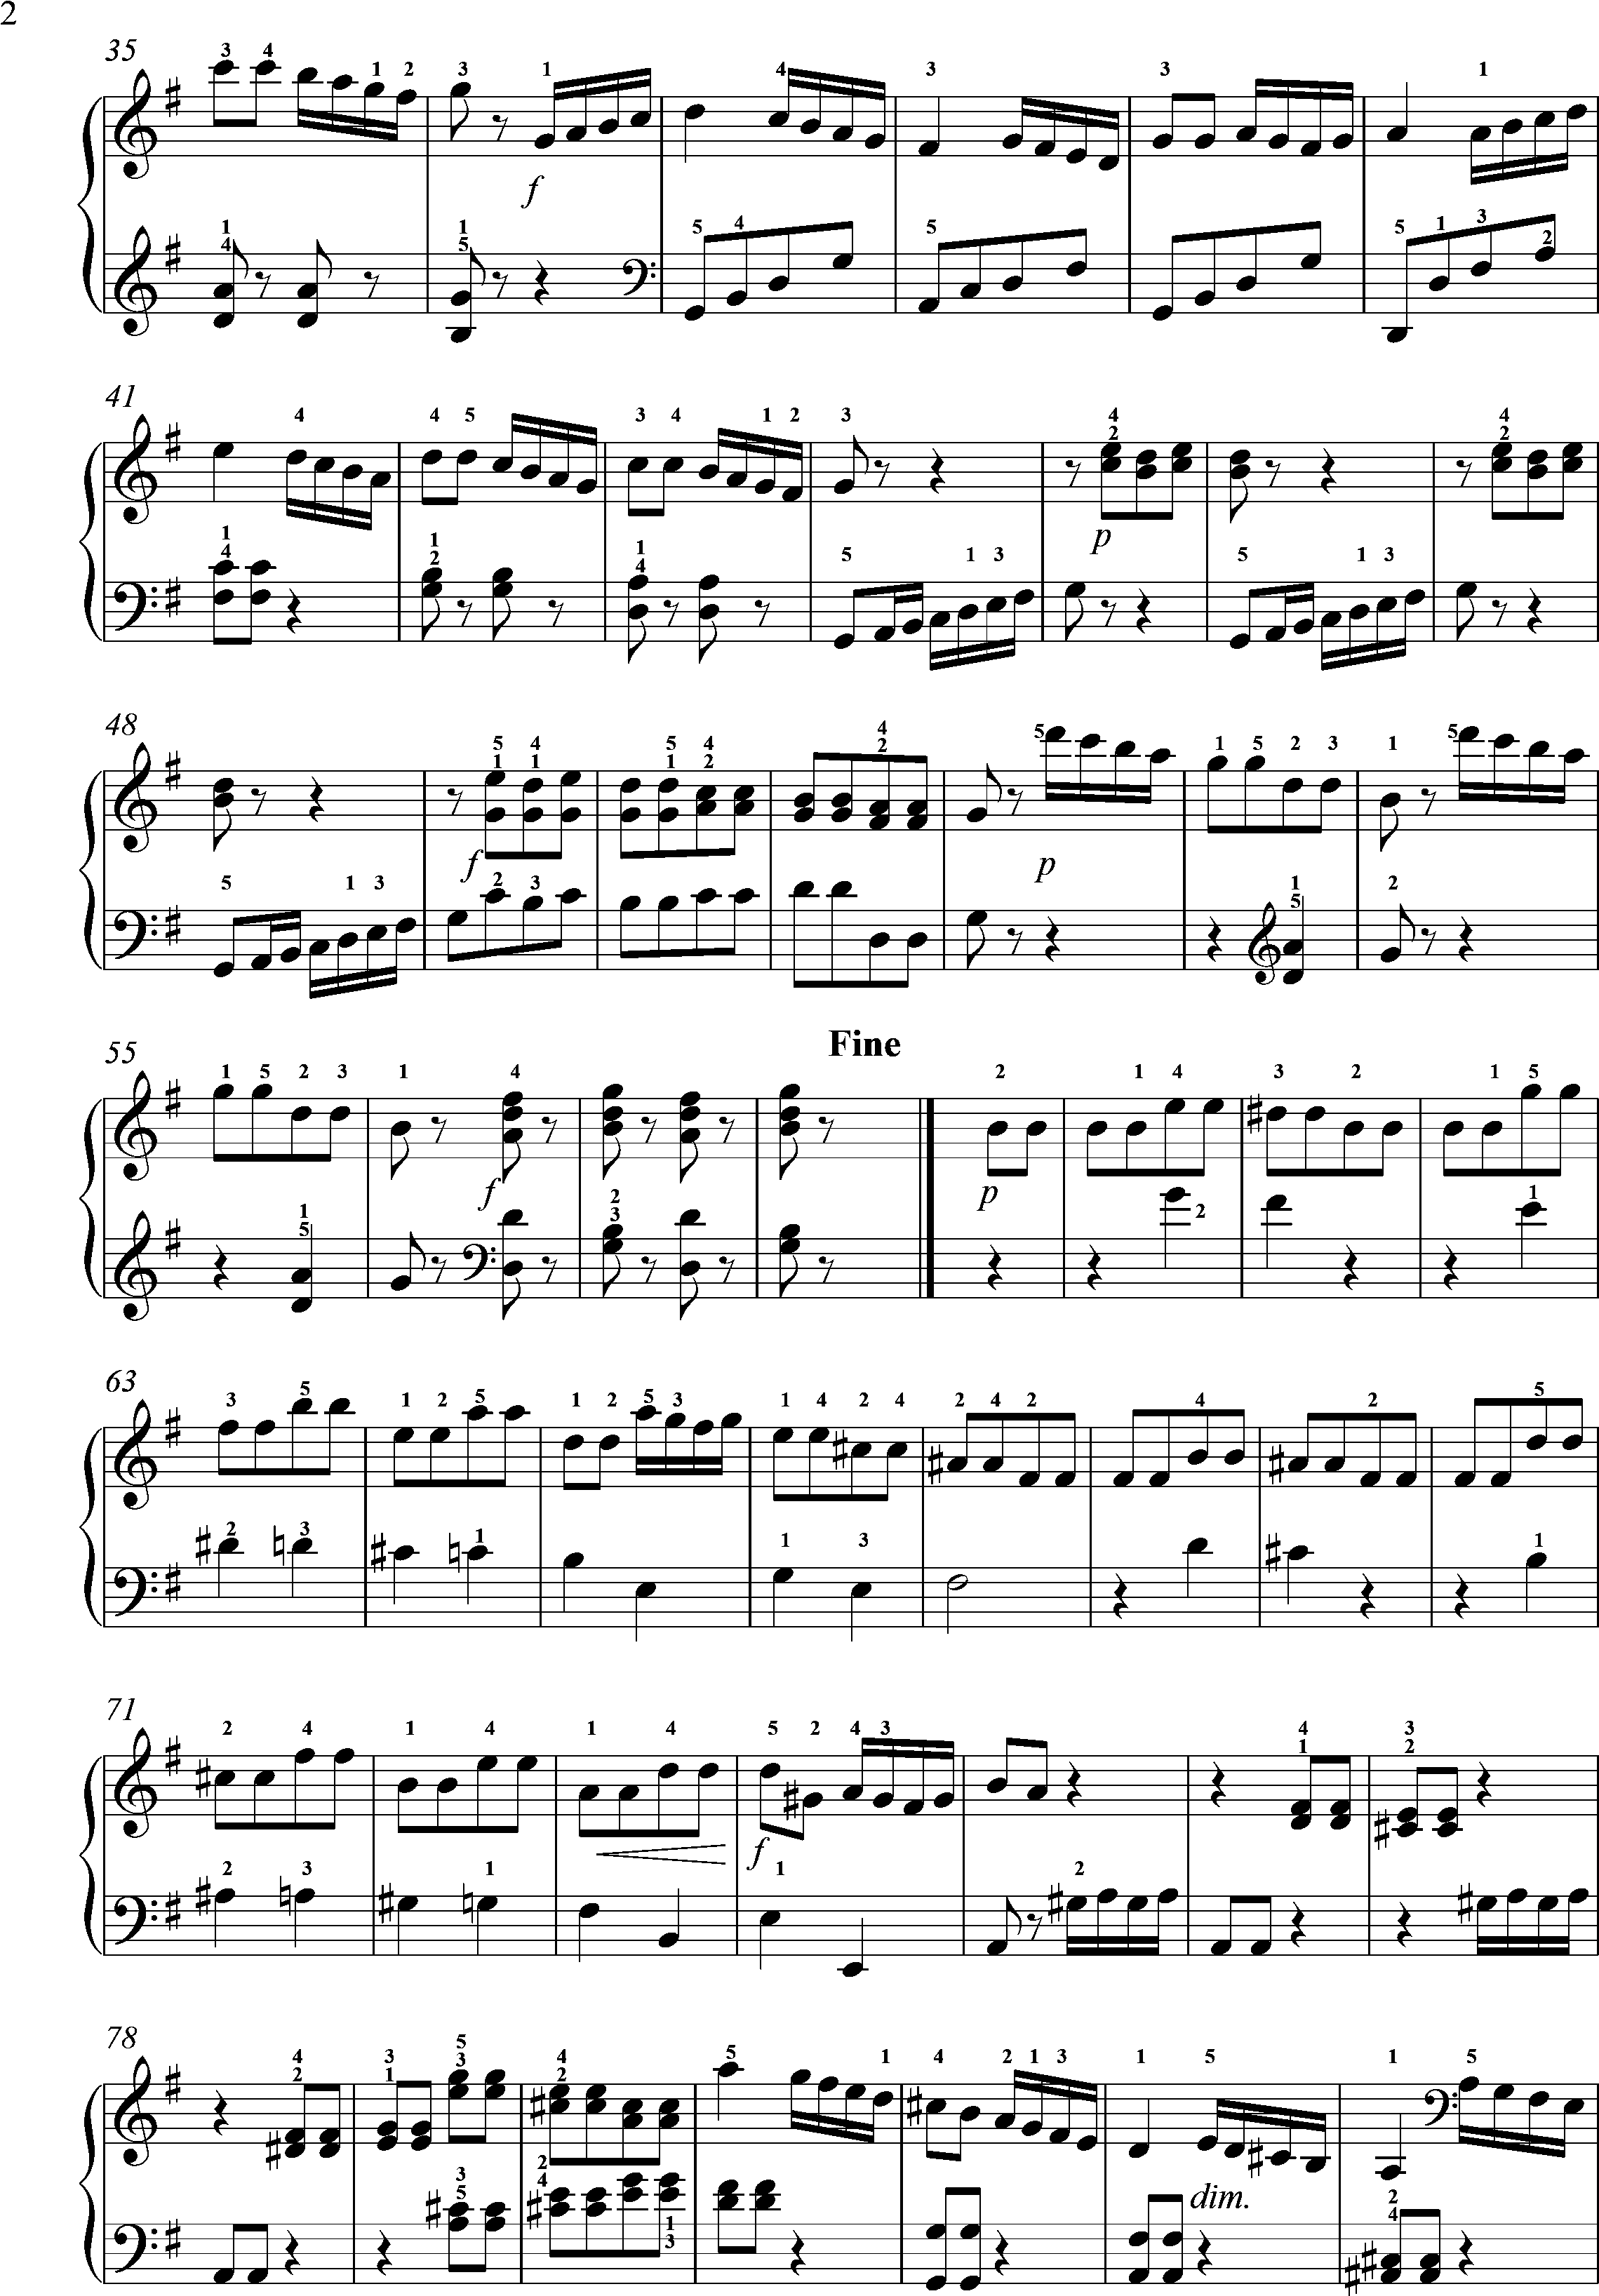 Clementi, op. 36Sonate 5--3.Satz- Rondo - Allegro molto, Seite 2